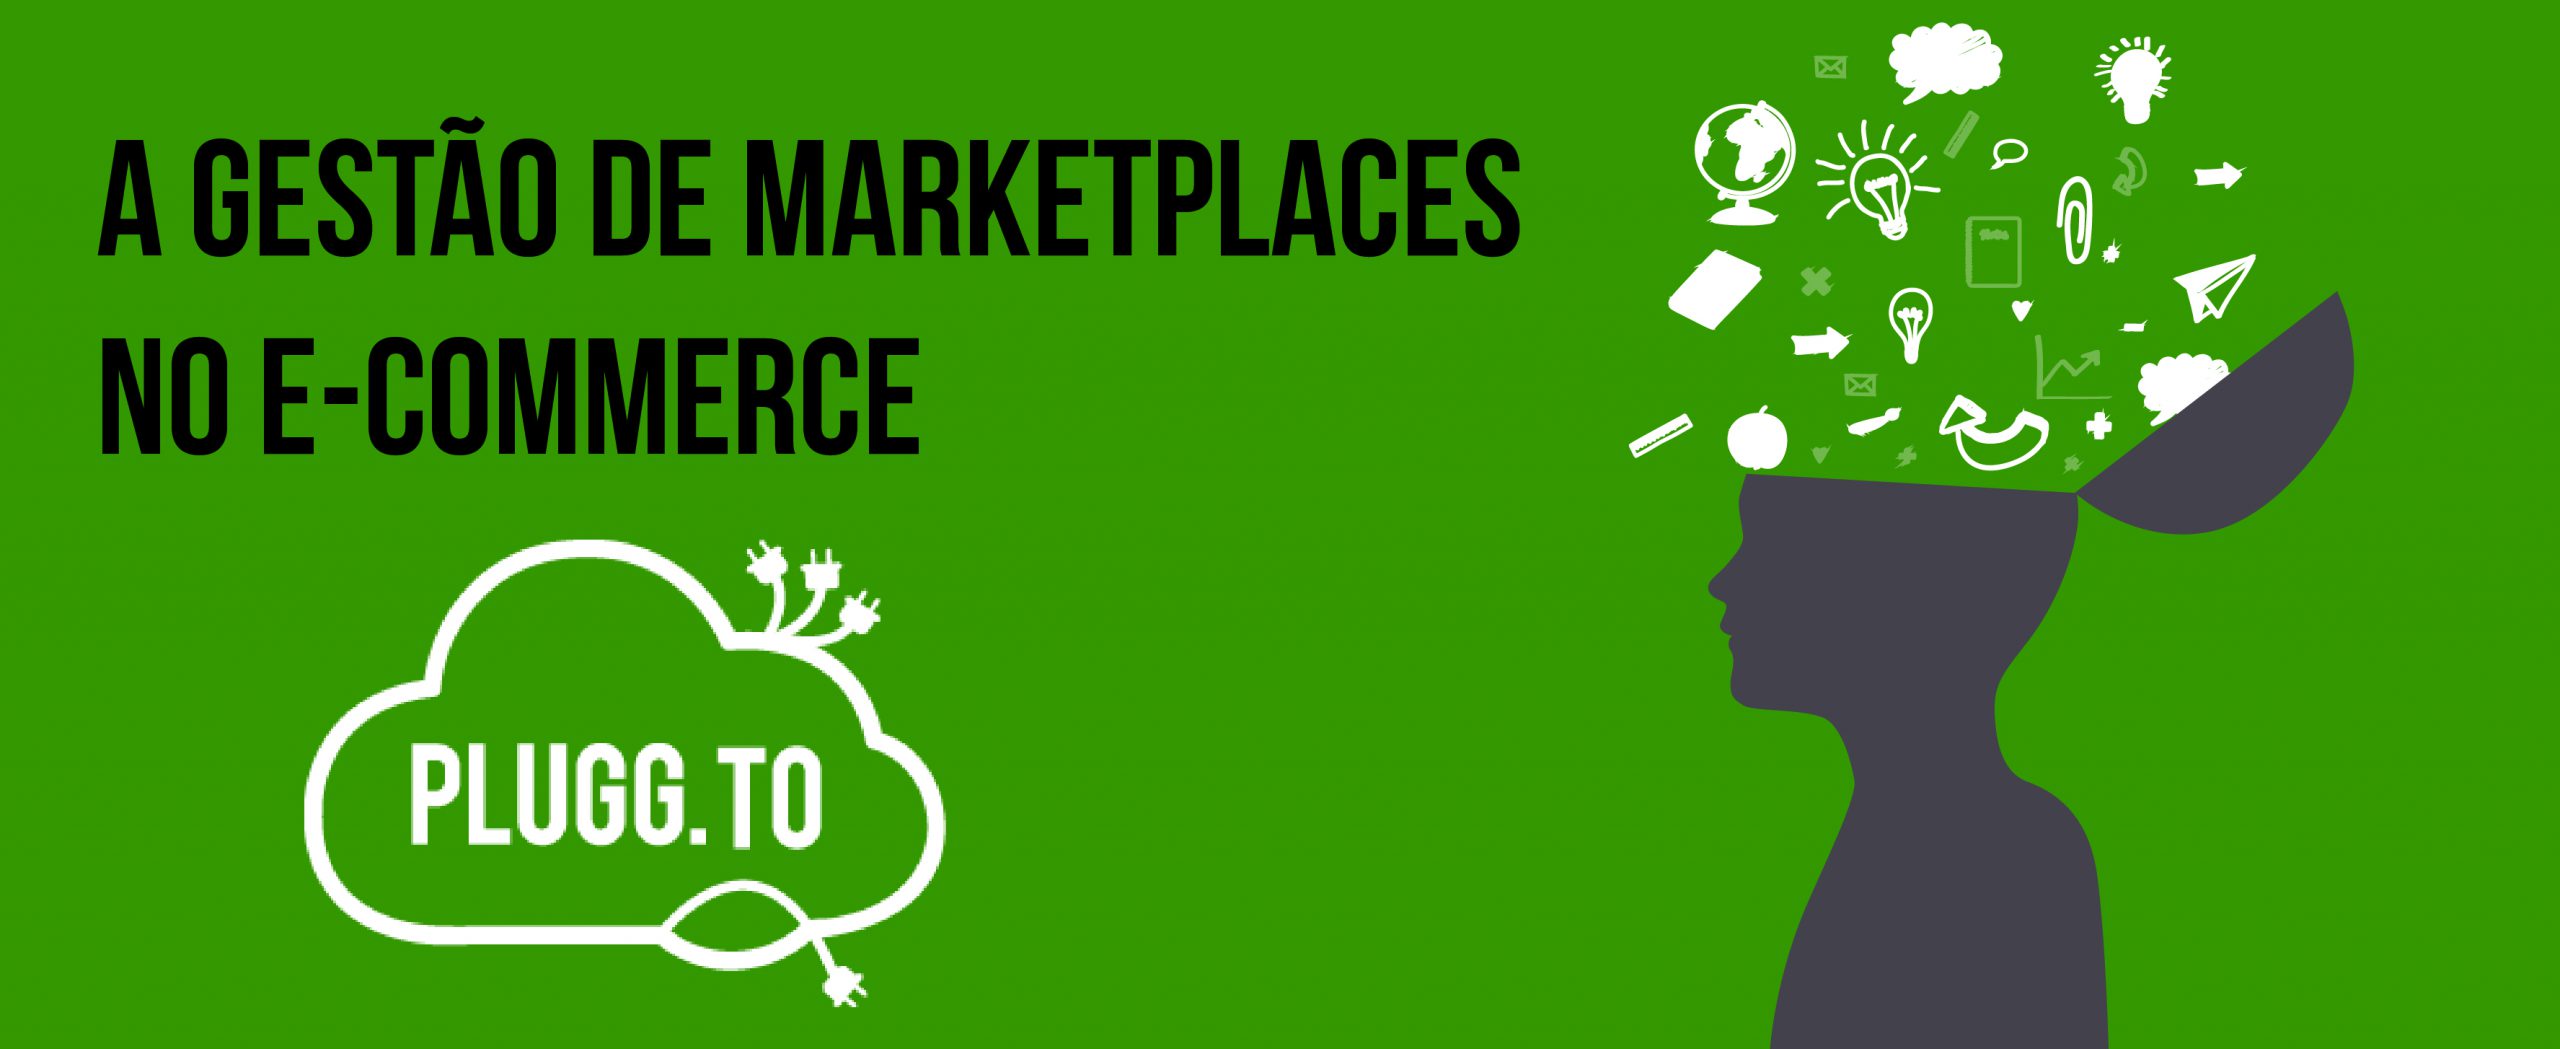 Você está visualizando atualmente A Gestão de Marketplaces no E-commerce